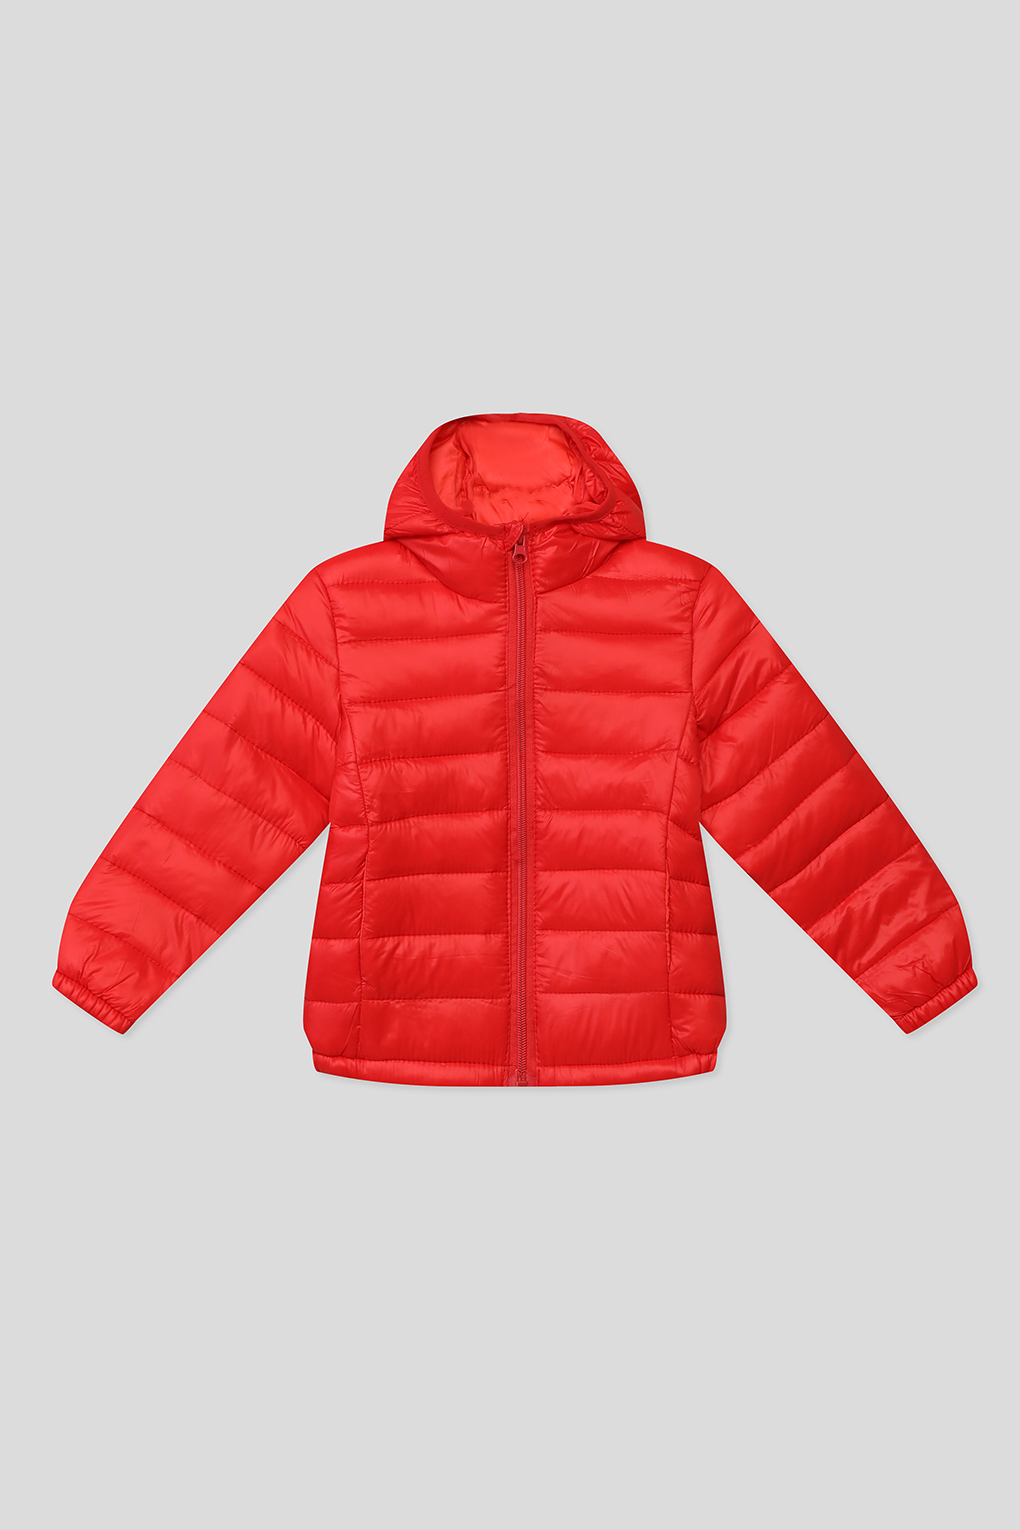 Куртка детская GIOCO G23049253-003 карсный красный, 158